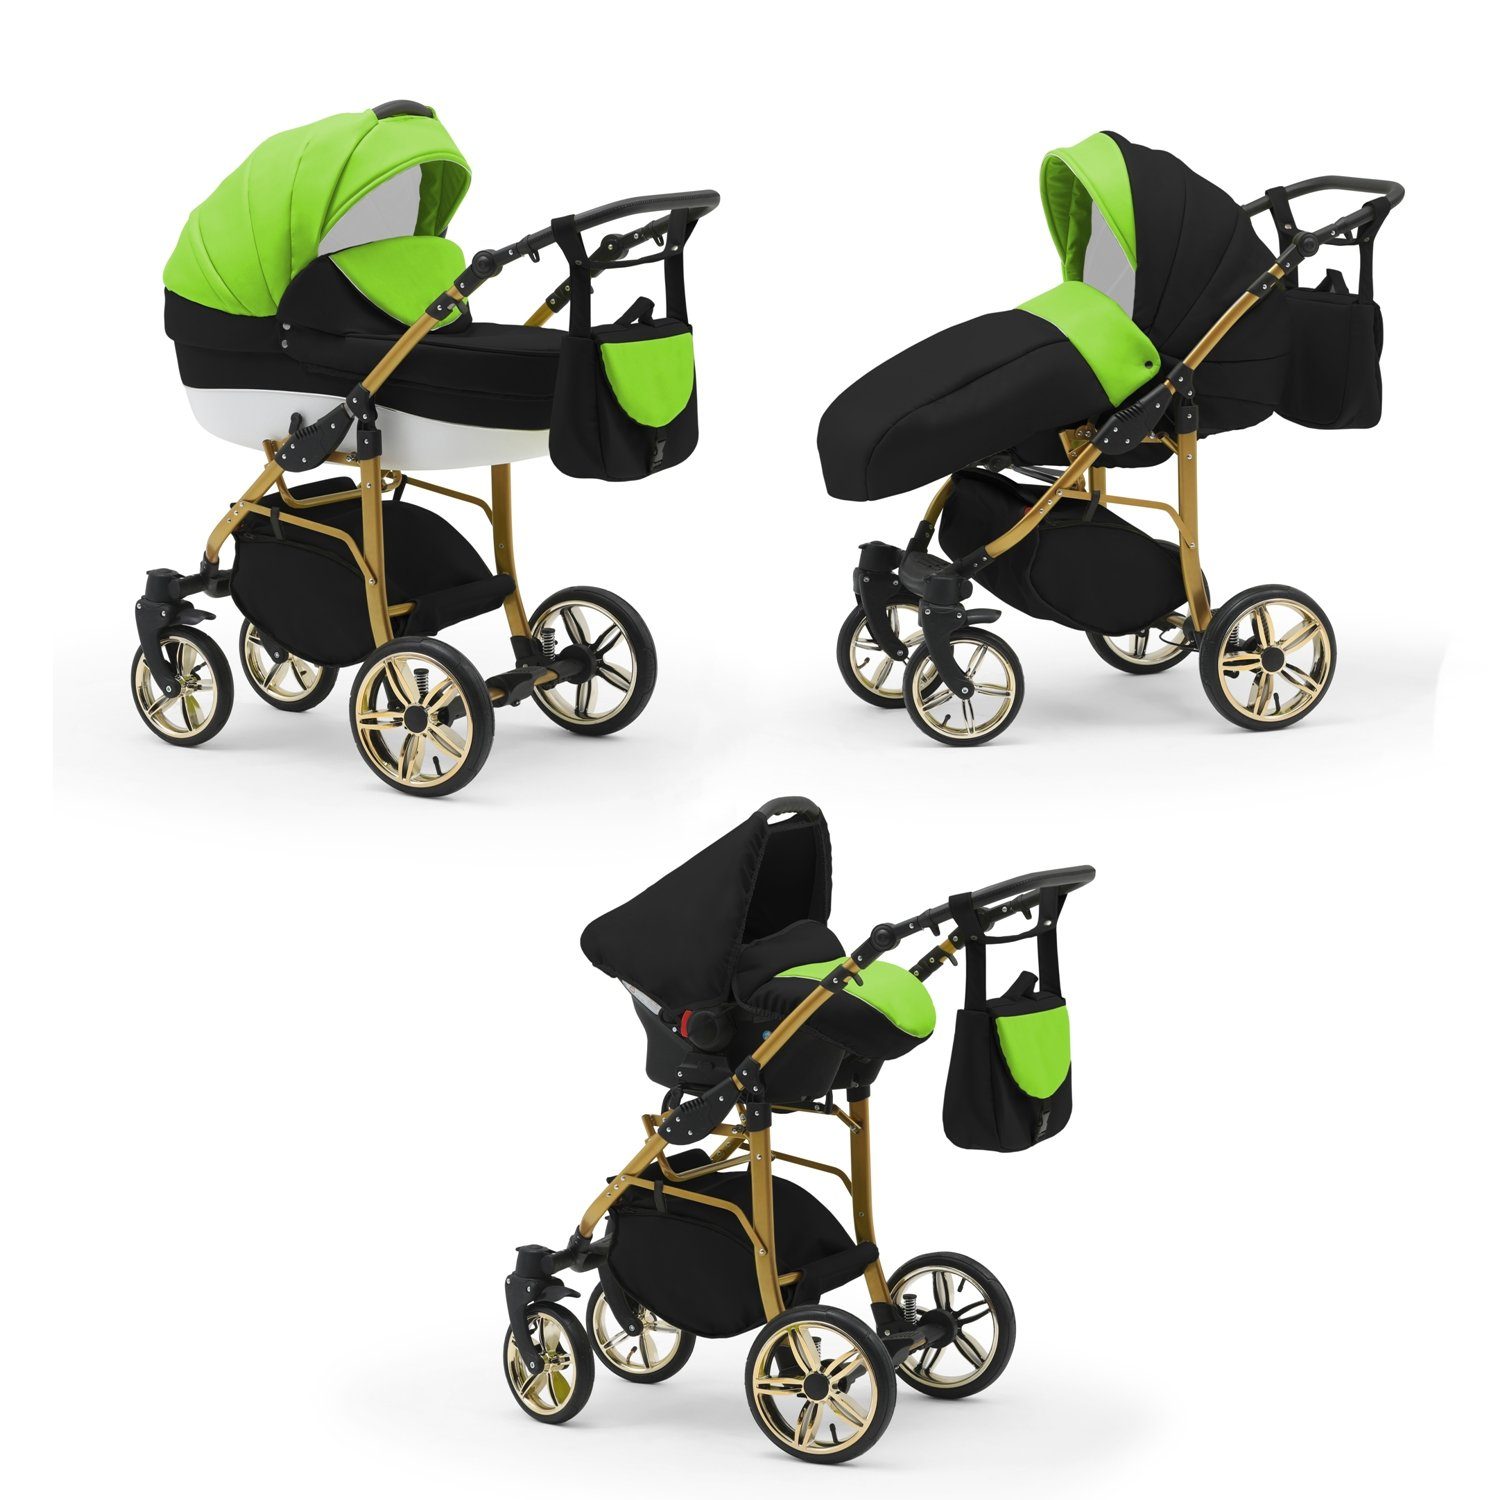 babies-on-wheels Kombi-Kinderwagen 3 in Farben 46 16 Teile Cosmo 1 - Kinderwagen-Set Gold- in Grün-Schwarz-Weiß